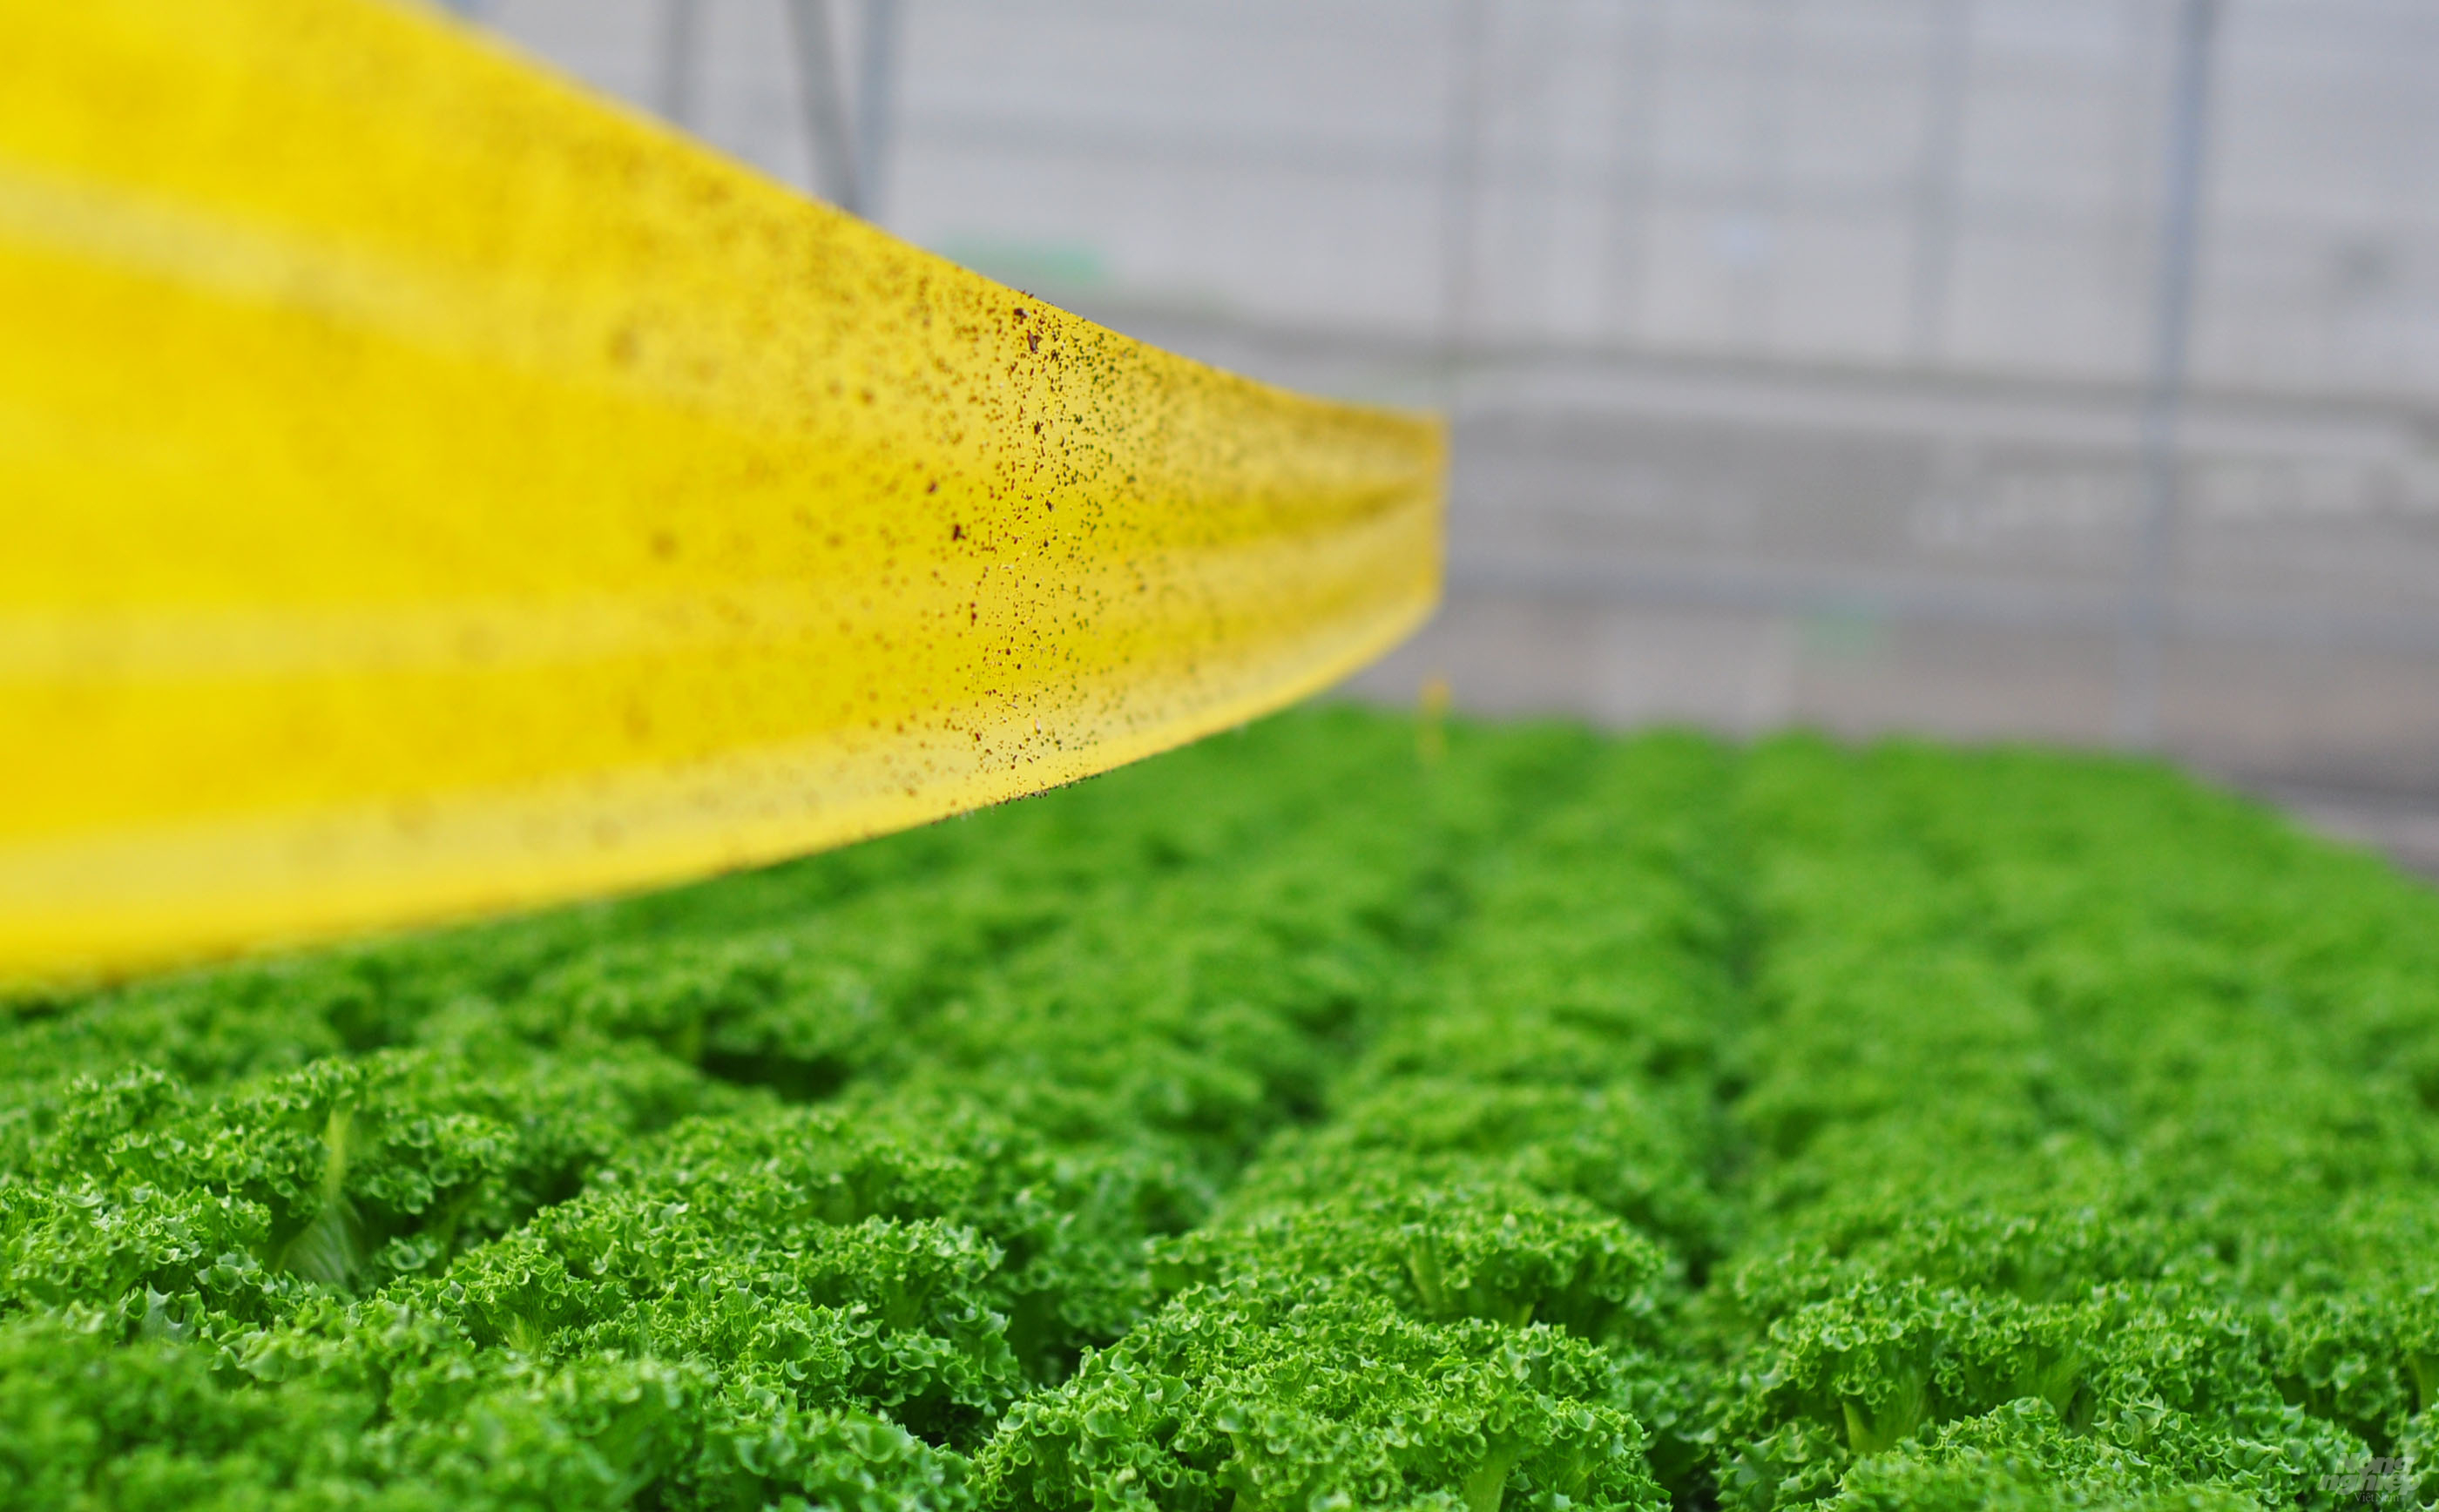 Theo chủ vườn, rau thủy canh được thực hiện theo quy trình VietGAP nên sản phẩm được tiêu thụ ở các chuỗi siêu thị, cửa hàng rau sạch trên toàn quốc.